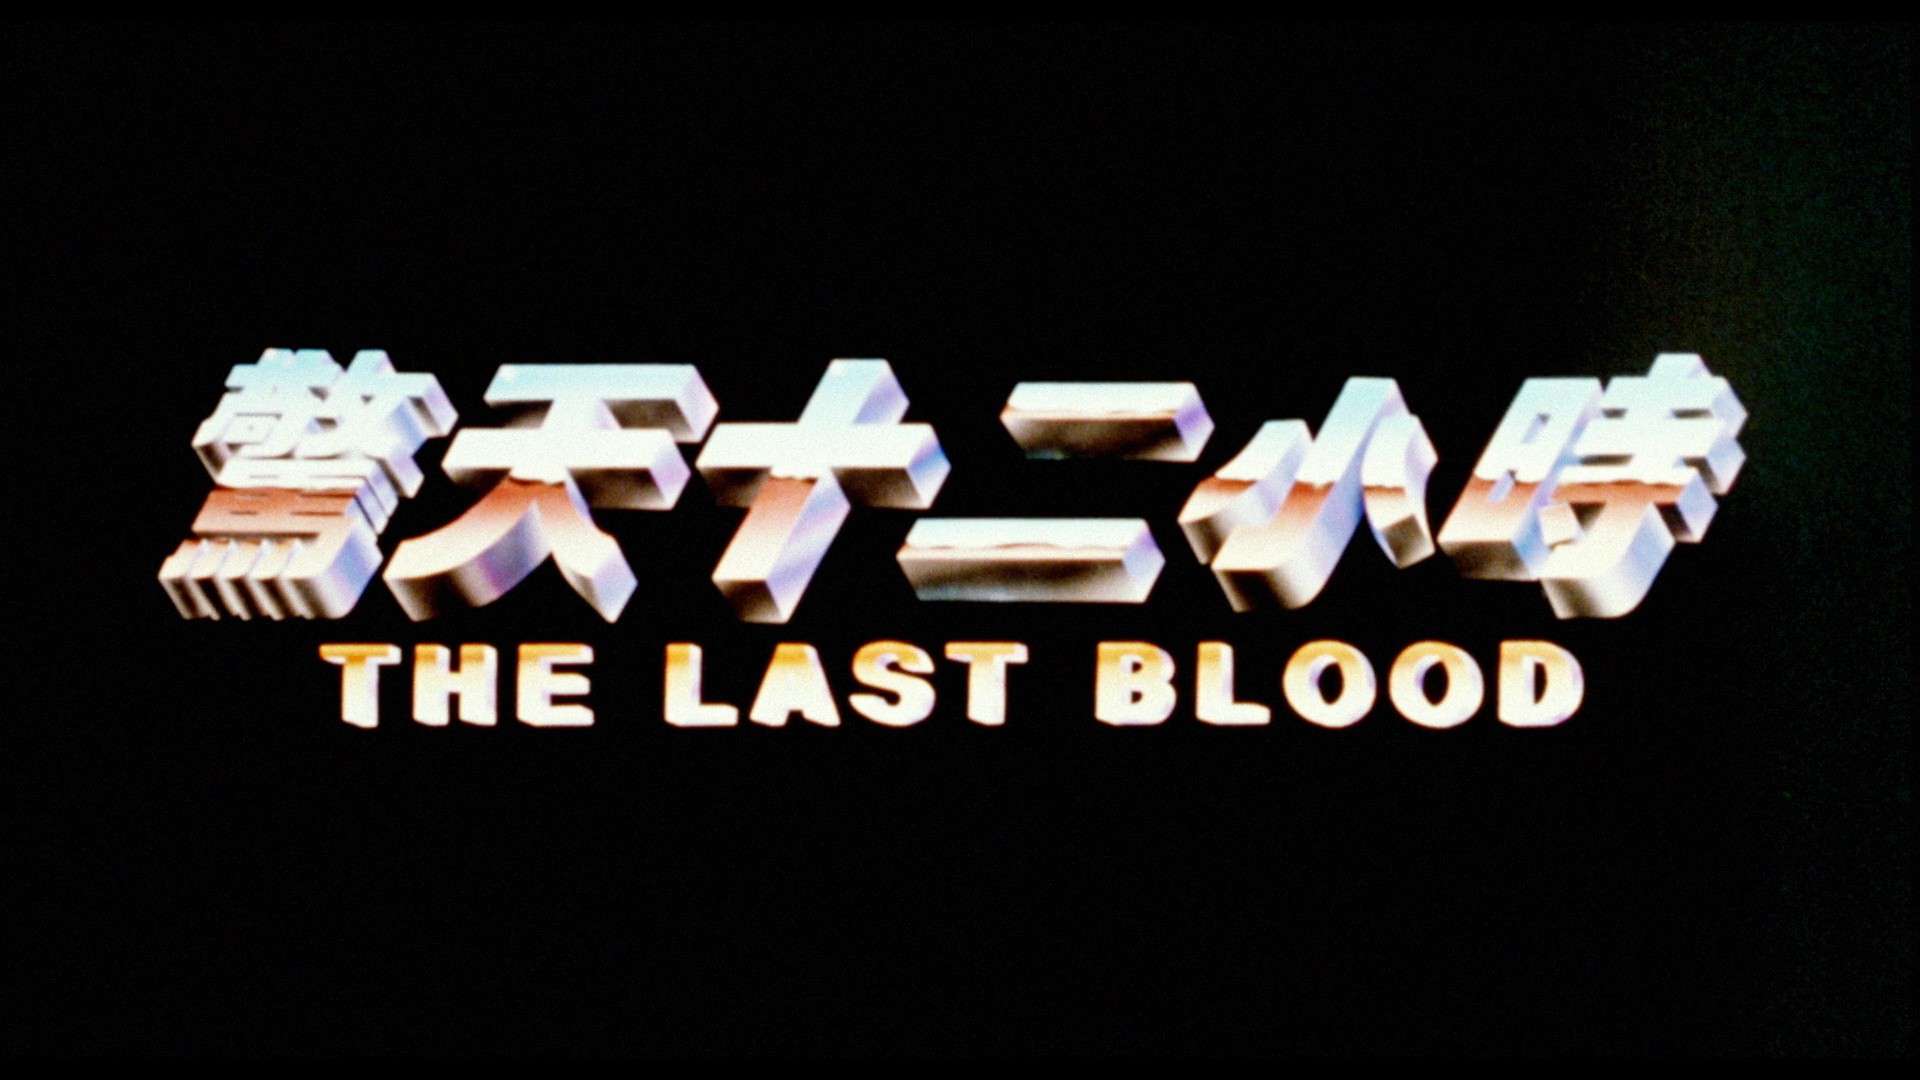 the last blood blu ray 88 films (1)